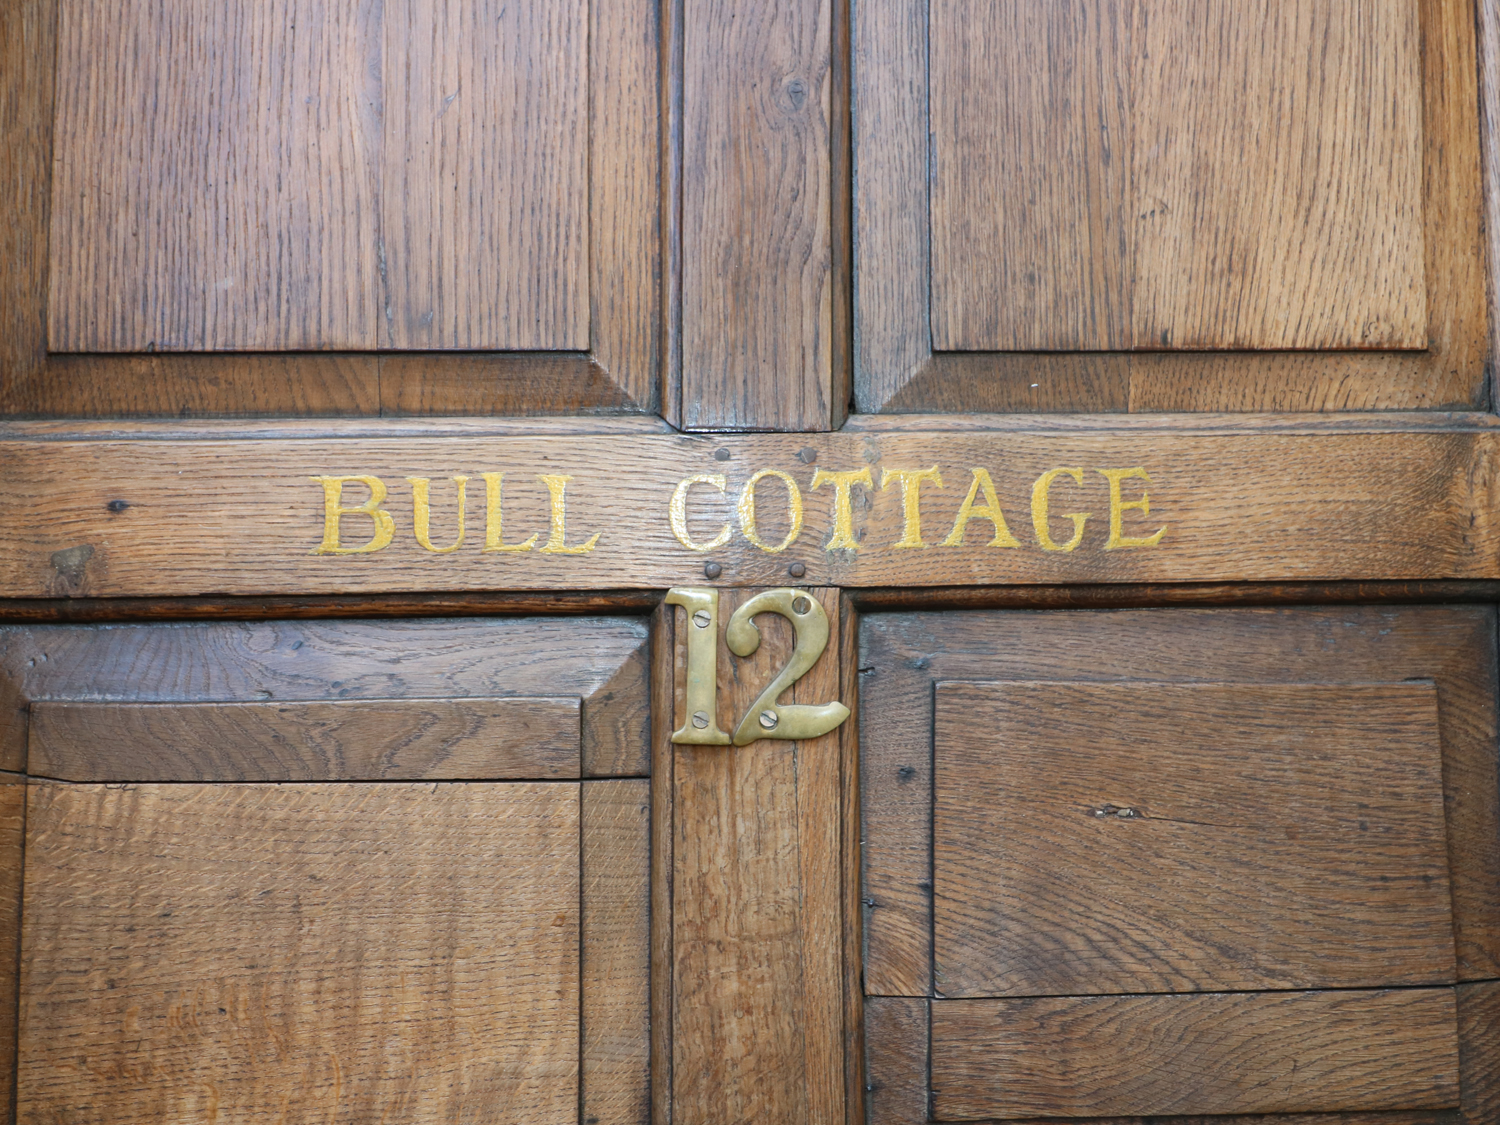 Bull Cottage, Burford